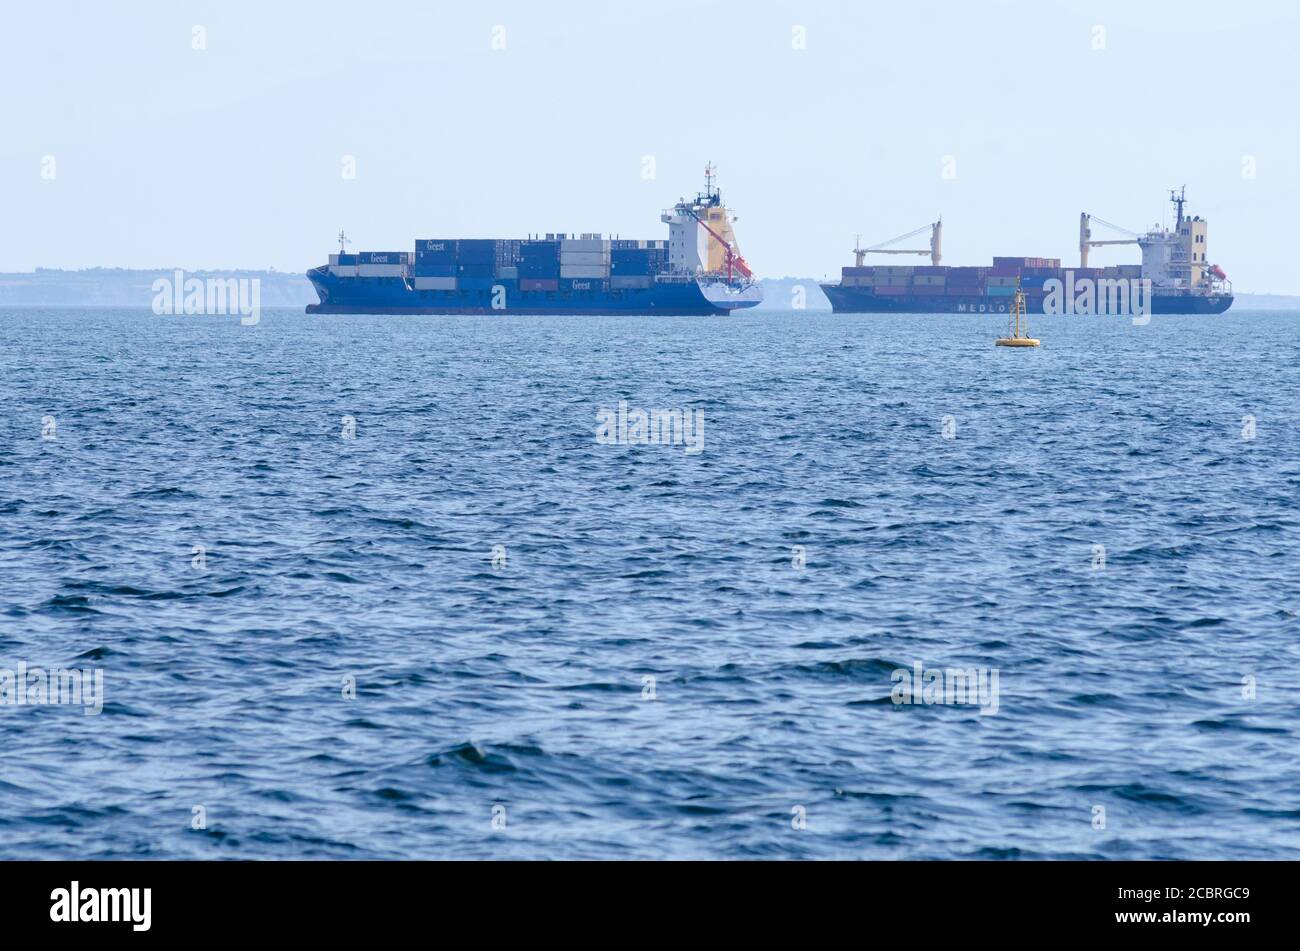 Containerschiffe verlassen den Hafen von Thessaloniki Mazedonien Griechenland - Foto: Geopix/Alamy Stock Photo Stockfoto